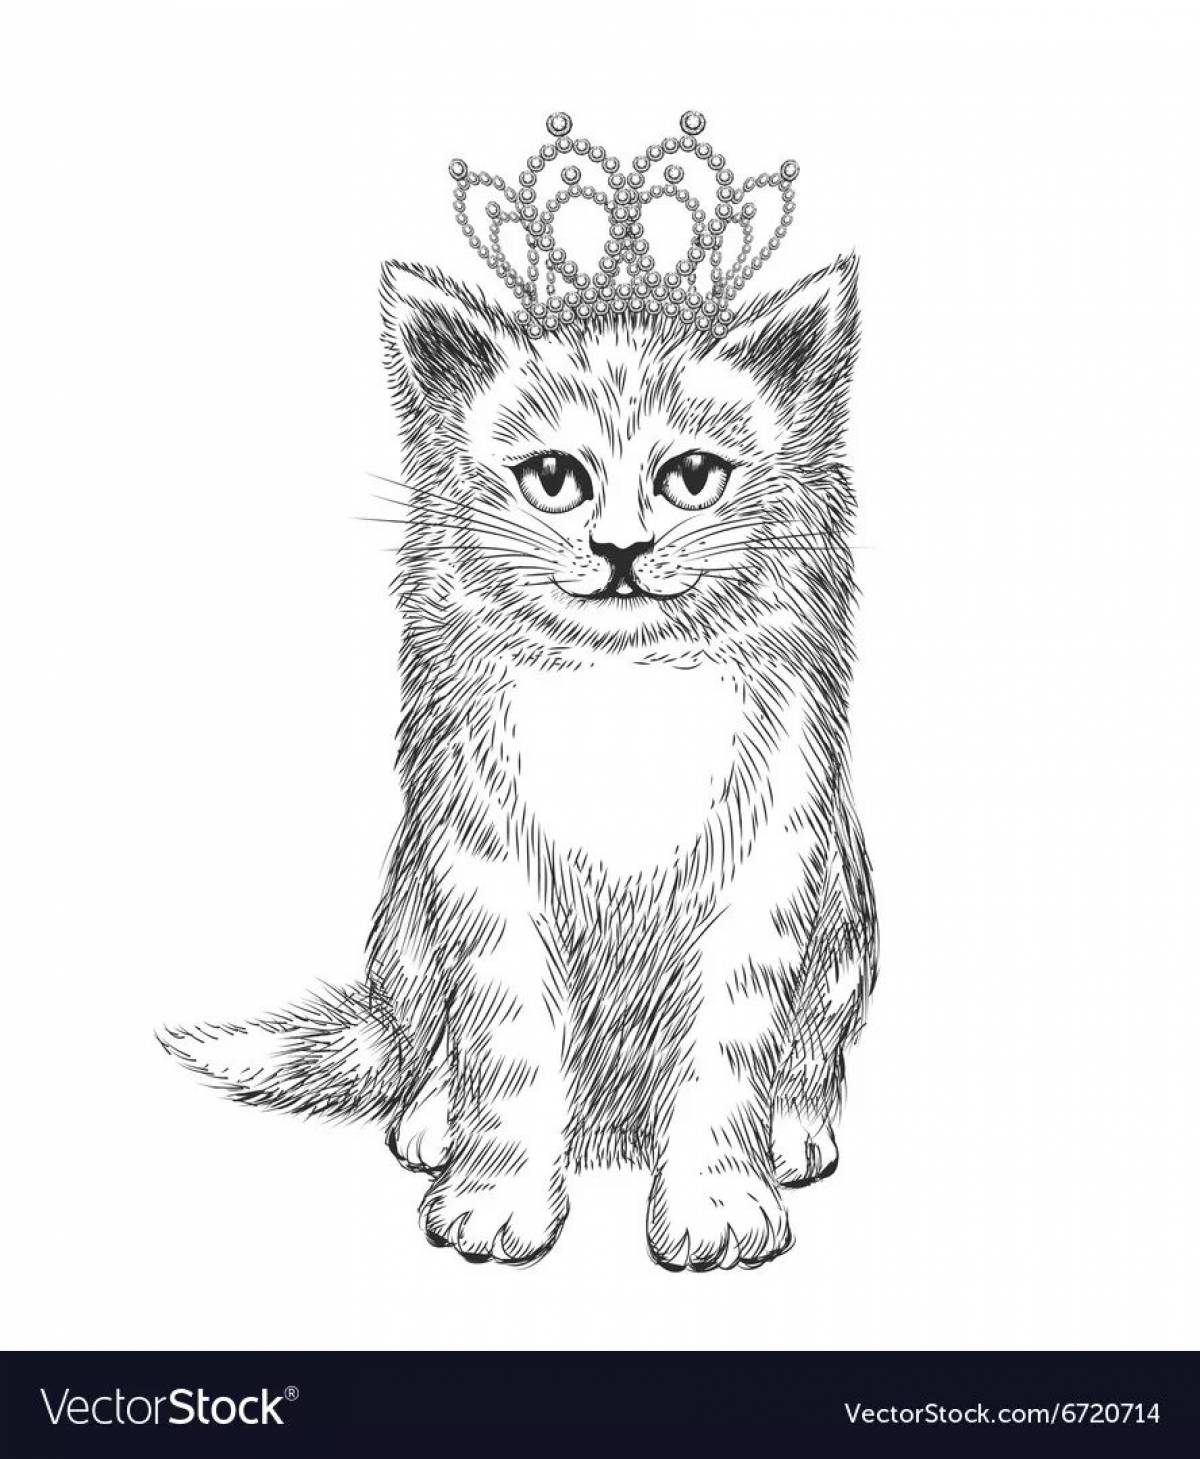 Кошка с короной #20